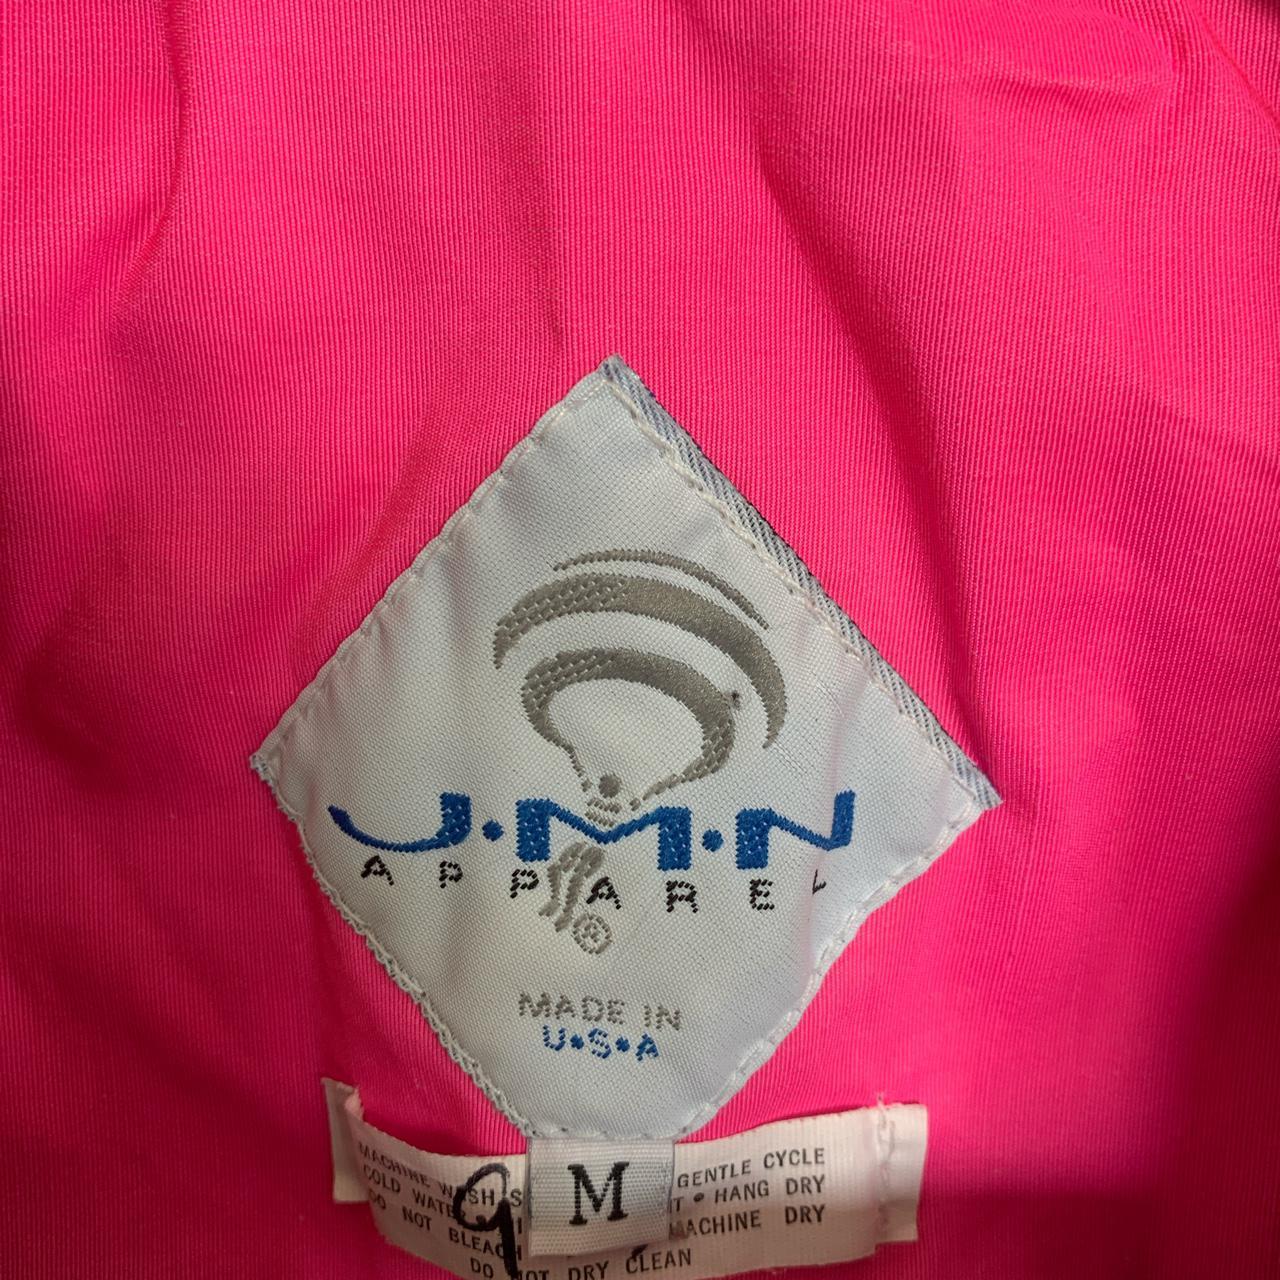 Product Image 3 - JMN Parachute Zip Up Jacket
Size